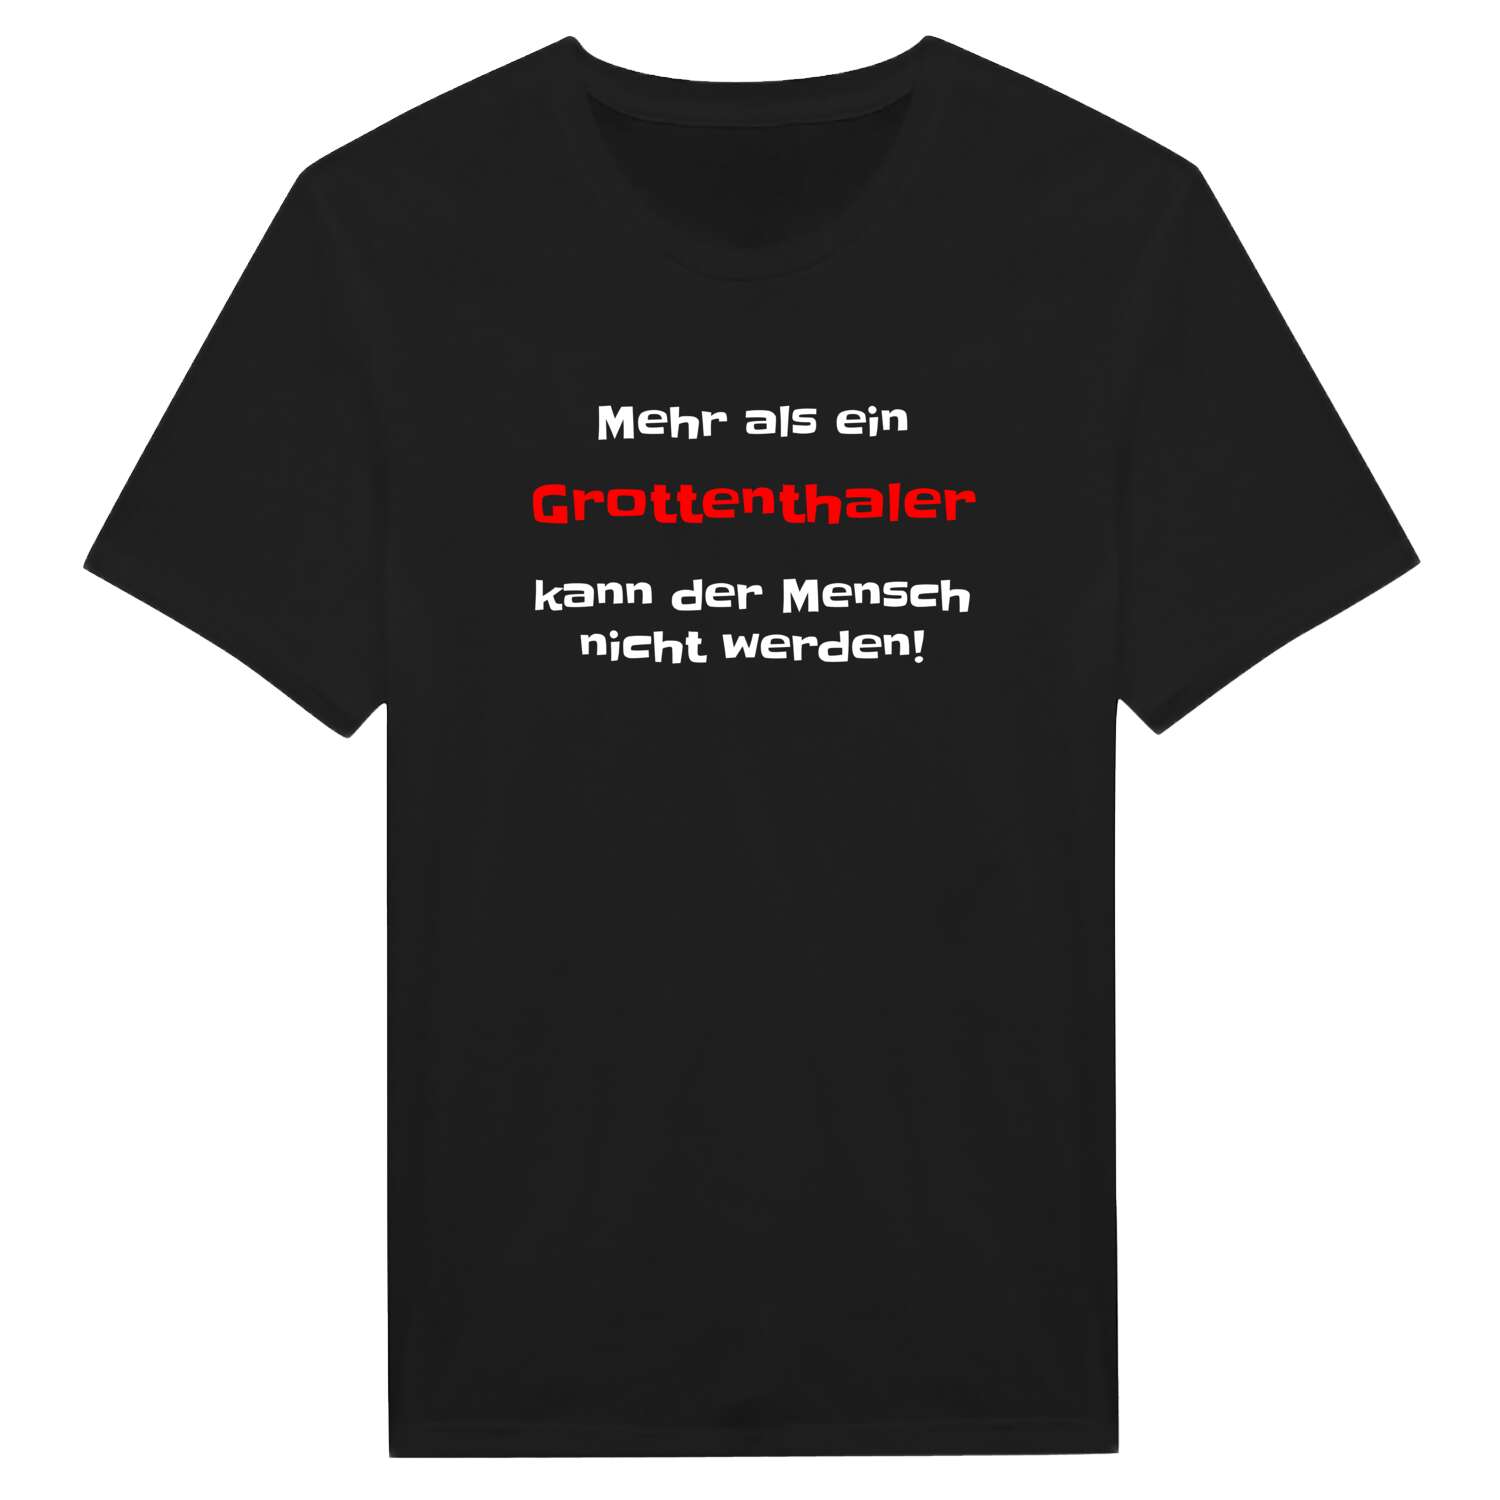 Grottenthal T-Shirt »Mehr als ein«